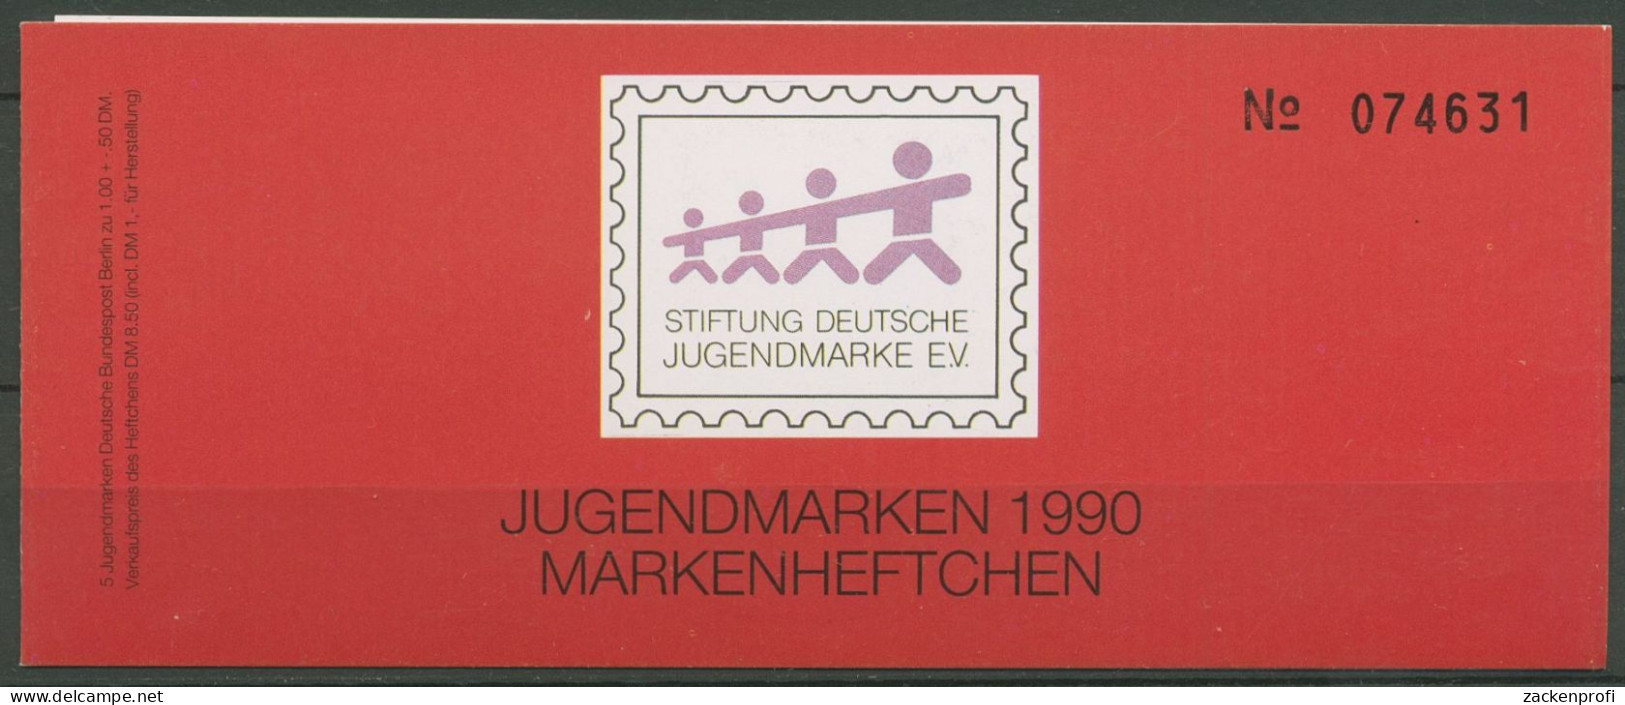 Berlin Jugendmarke 1990 Max & Moritz Markenheftchen 871 MH Postfrisch (C60184) - Booklets